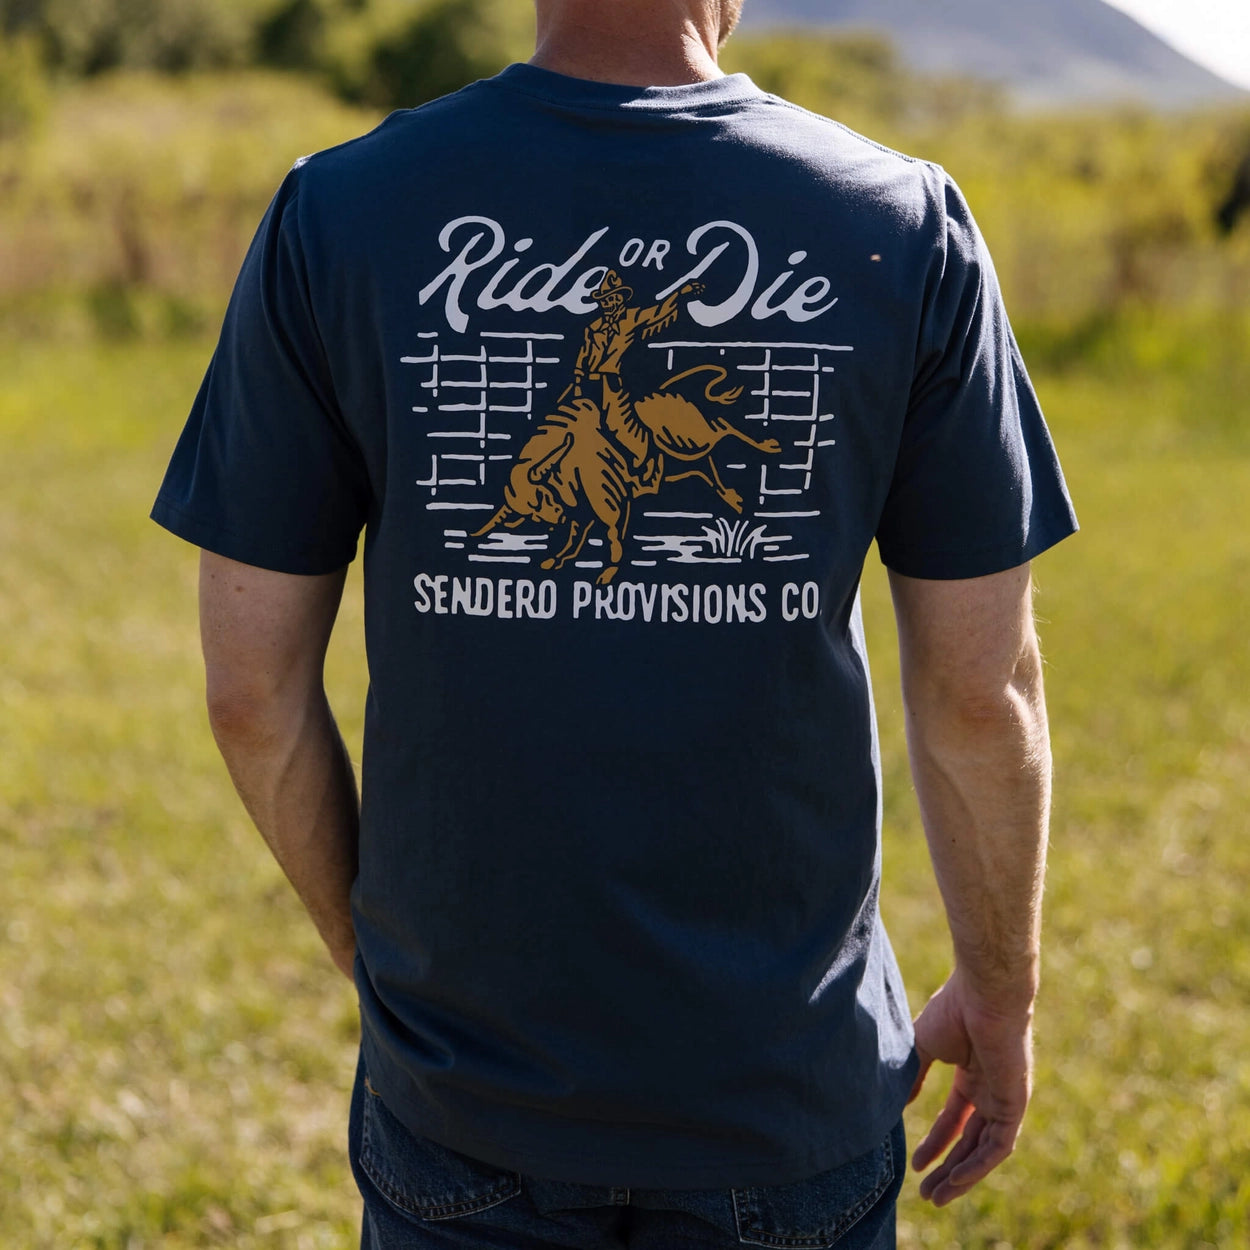 Ride or Die T-Shirt